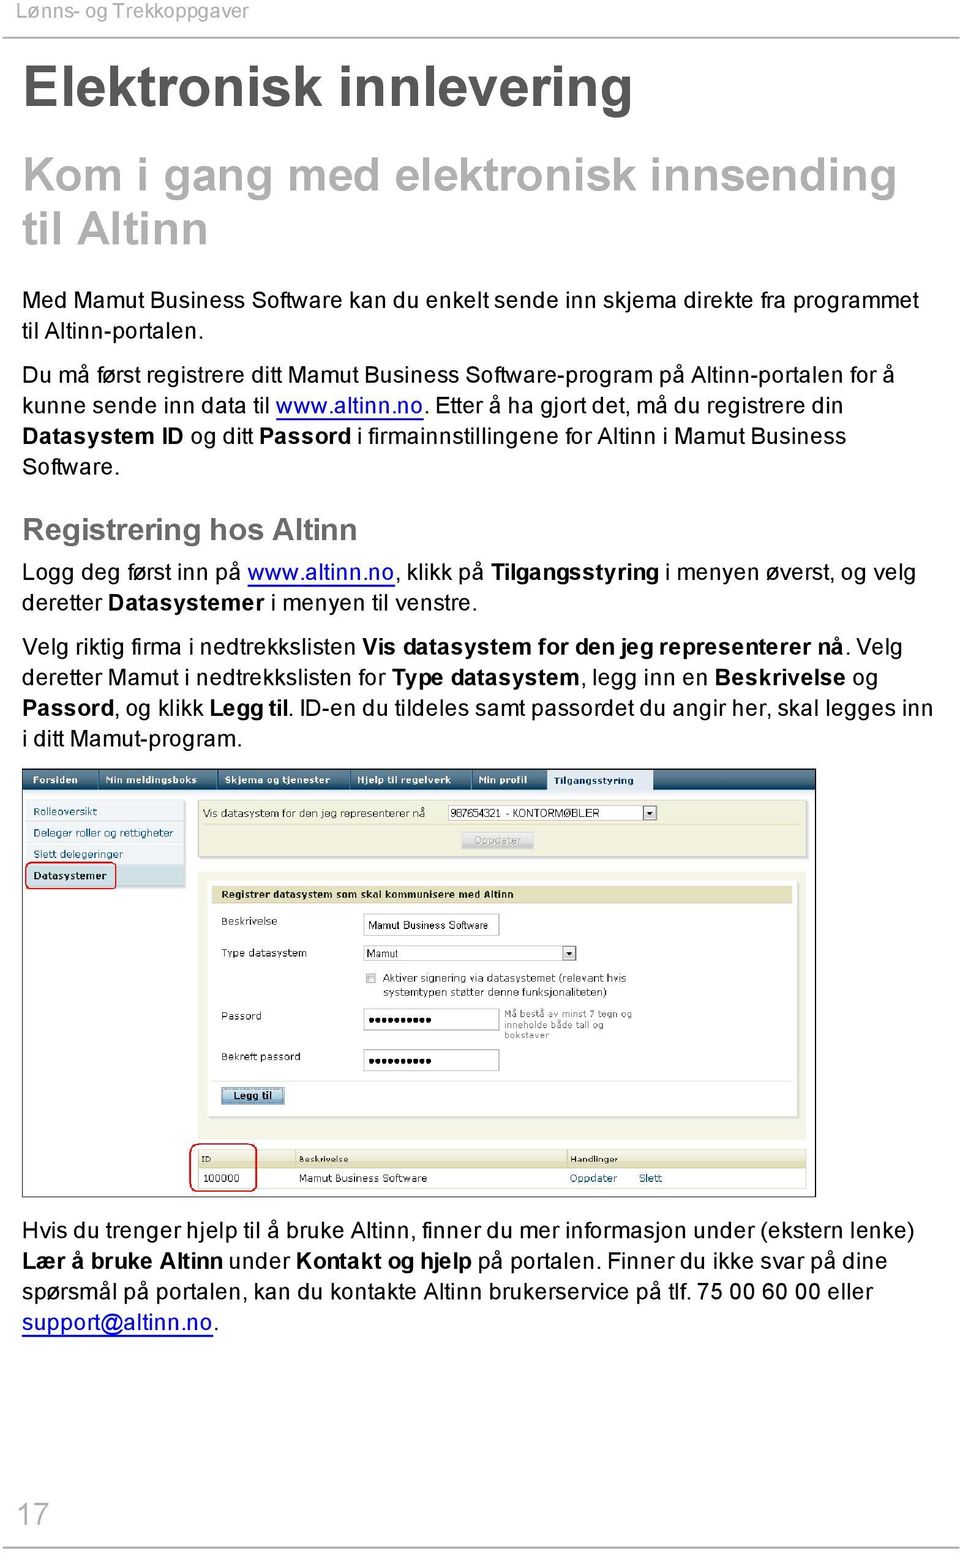 Etter å ha gjort det, må du registrere din Datasystem ID og ditt Passord i firmainnstillingene for Altinn i Mamut Business Software. Registrering hos Altinn Logg deg først inn på www.altinn.